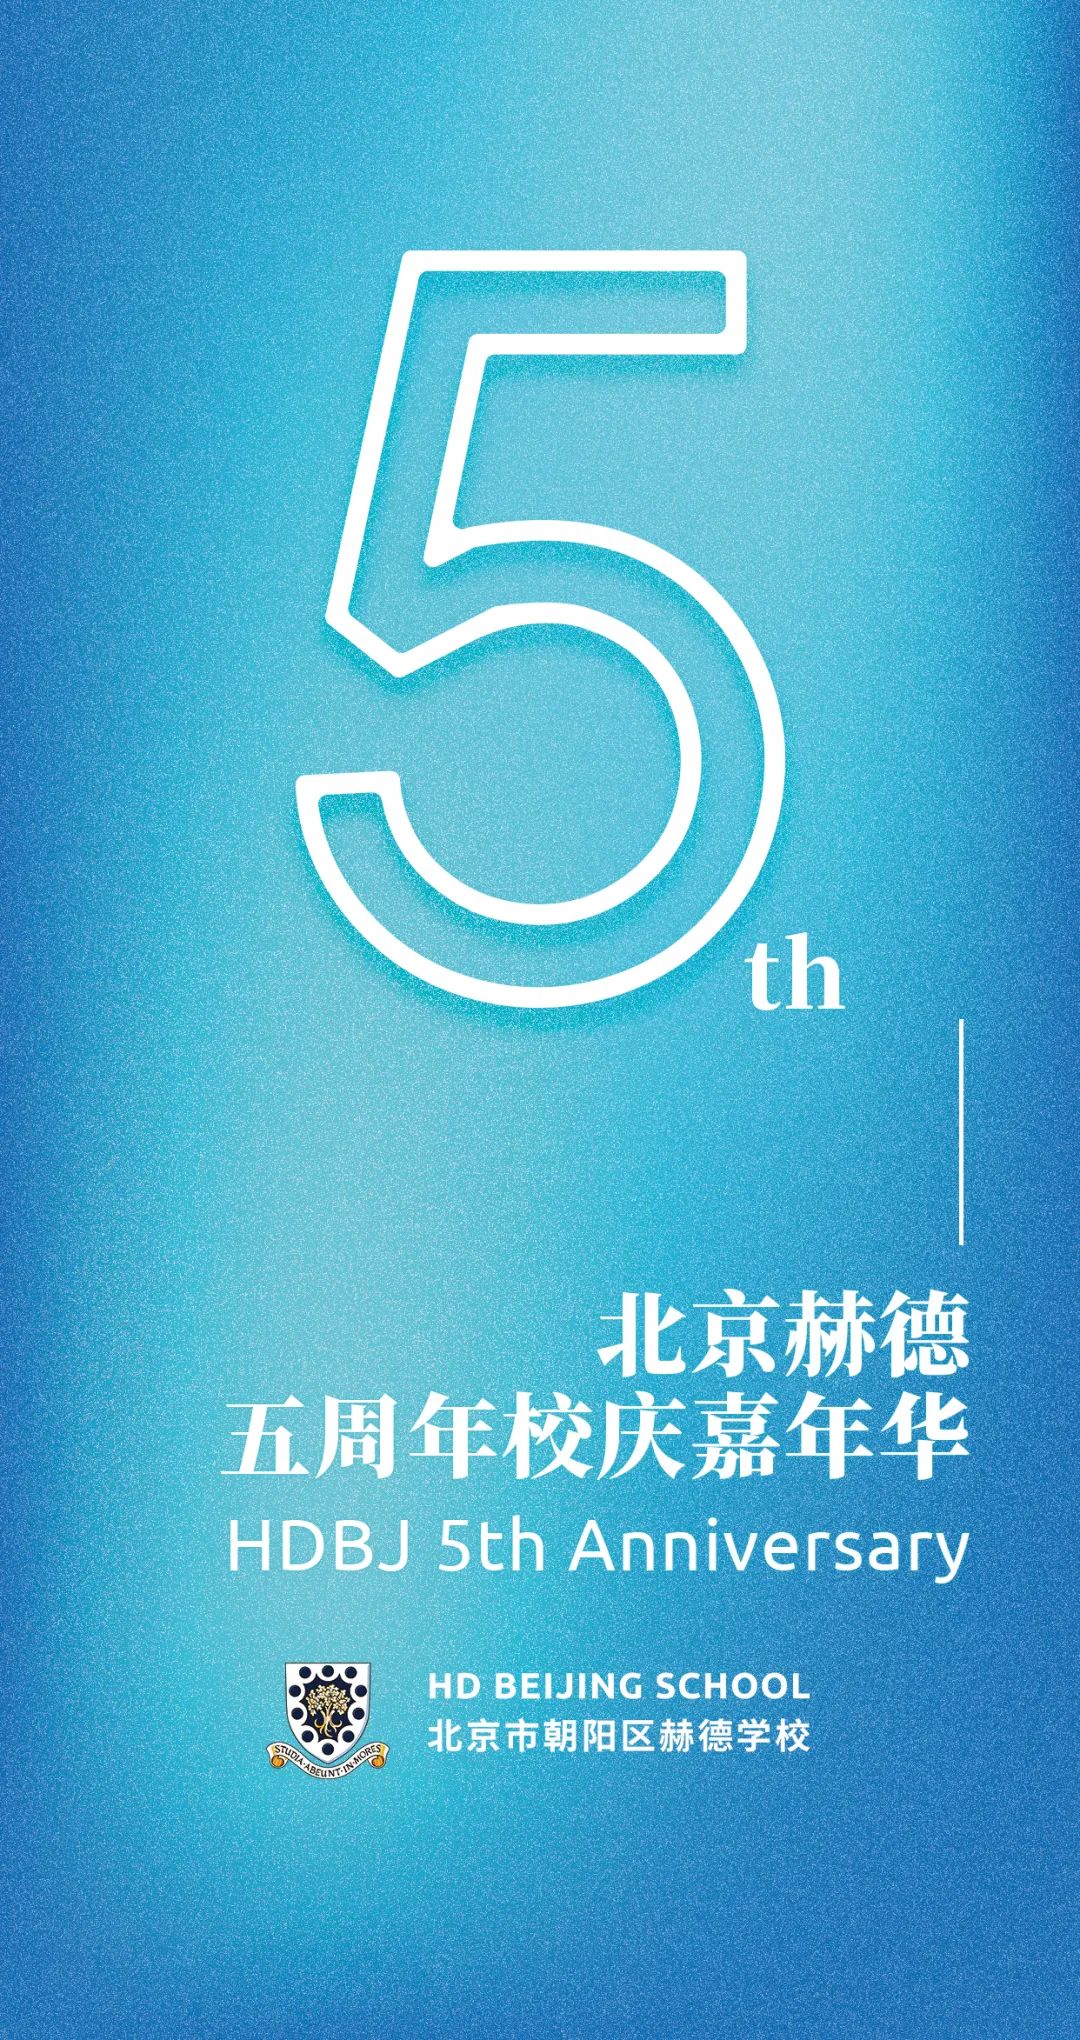 相约五月 | 北京赫德创校五周年寻光之旅嘉年华 HDBJ 5th Anniversary Celebration